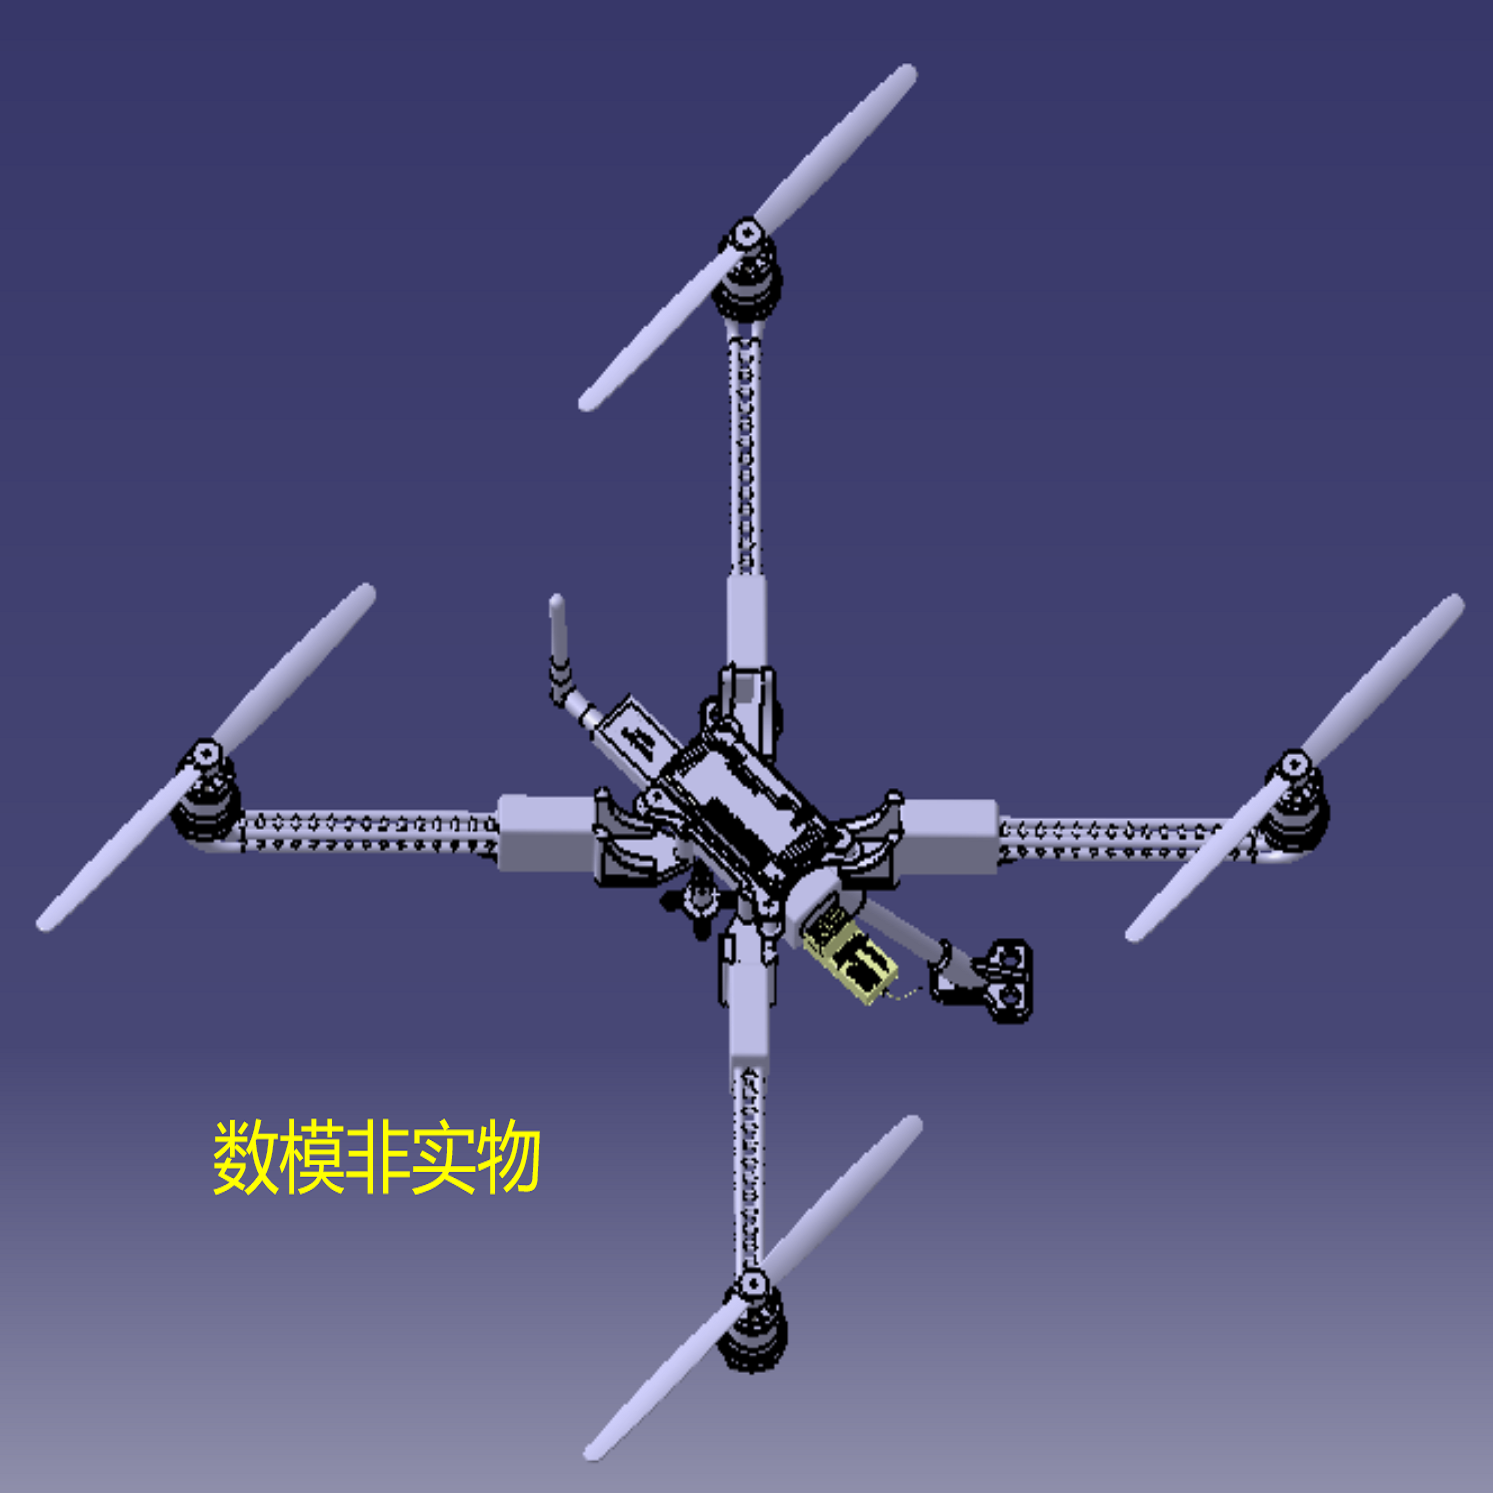 无人直升机结构图